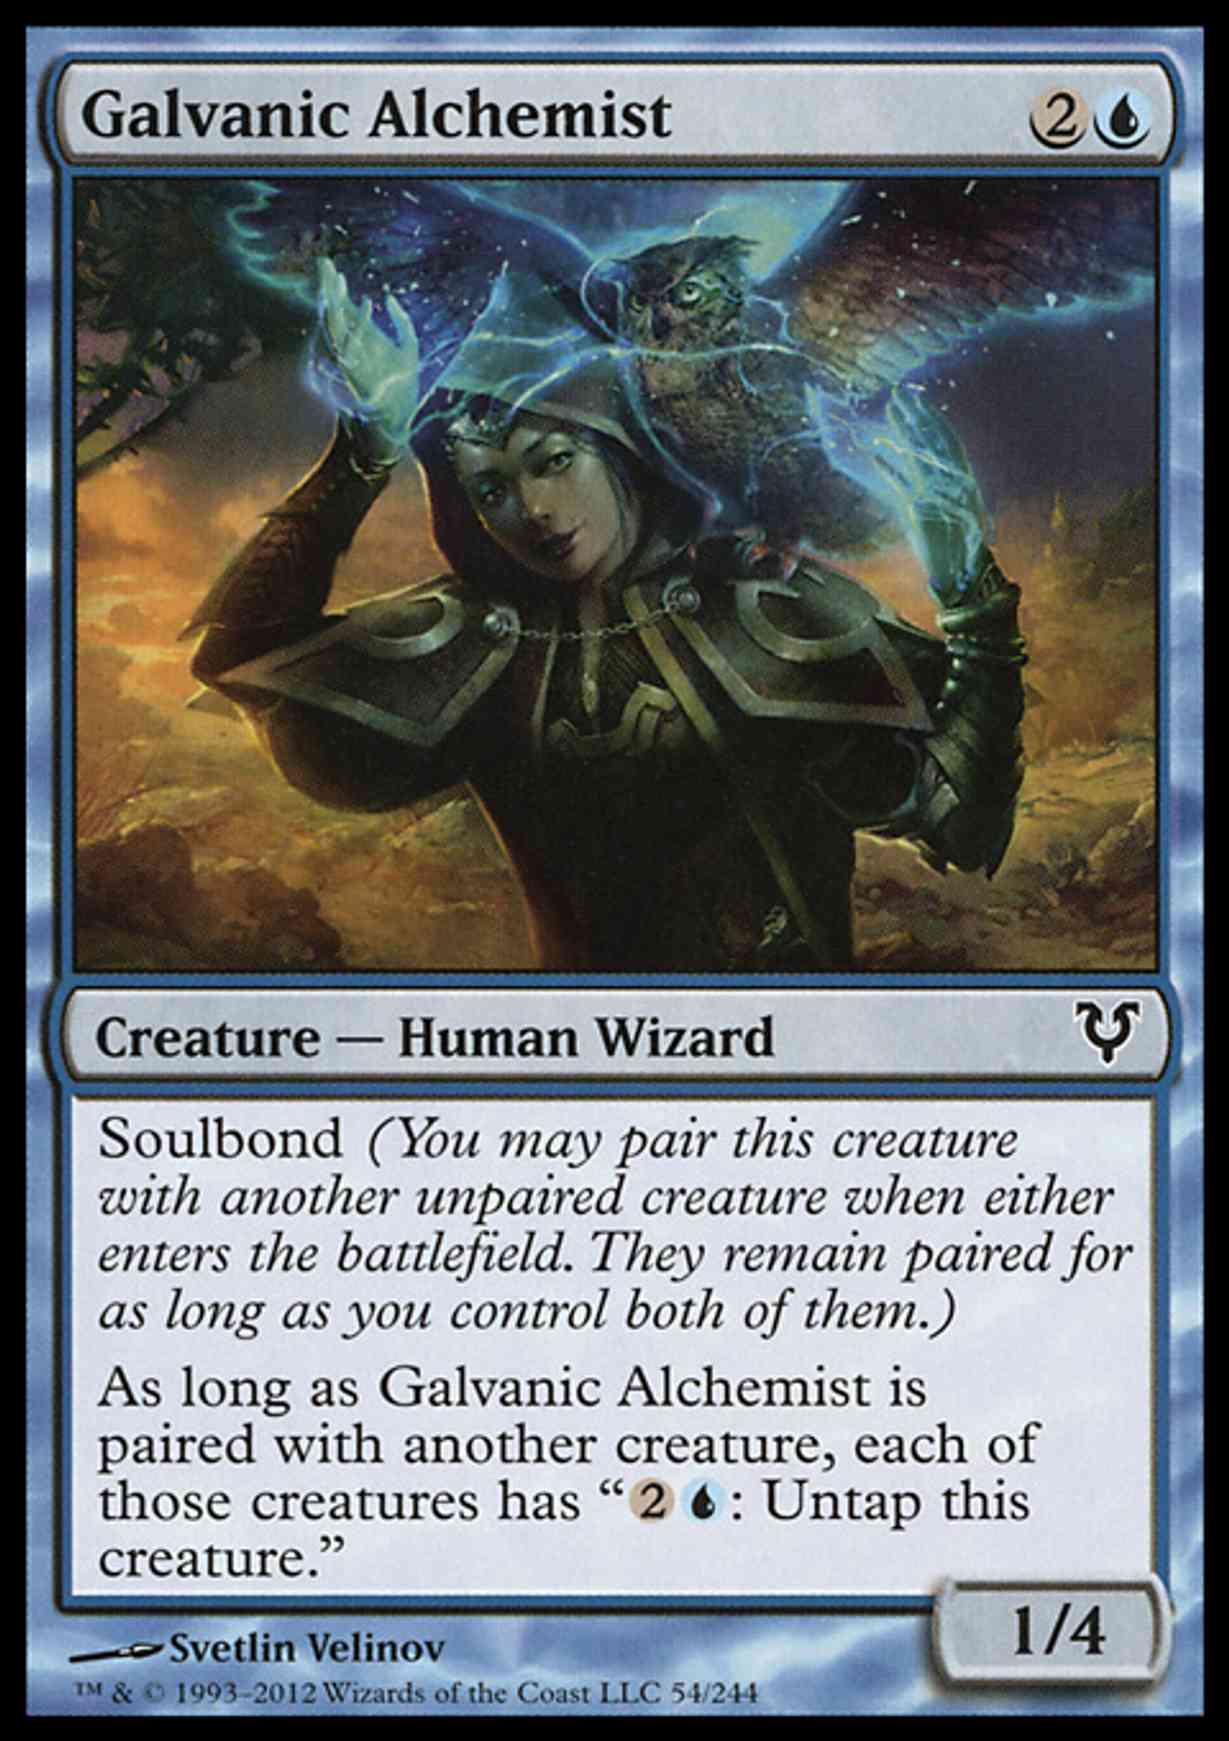 Galvanic Alchemist magic card front